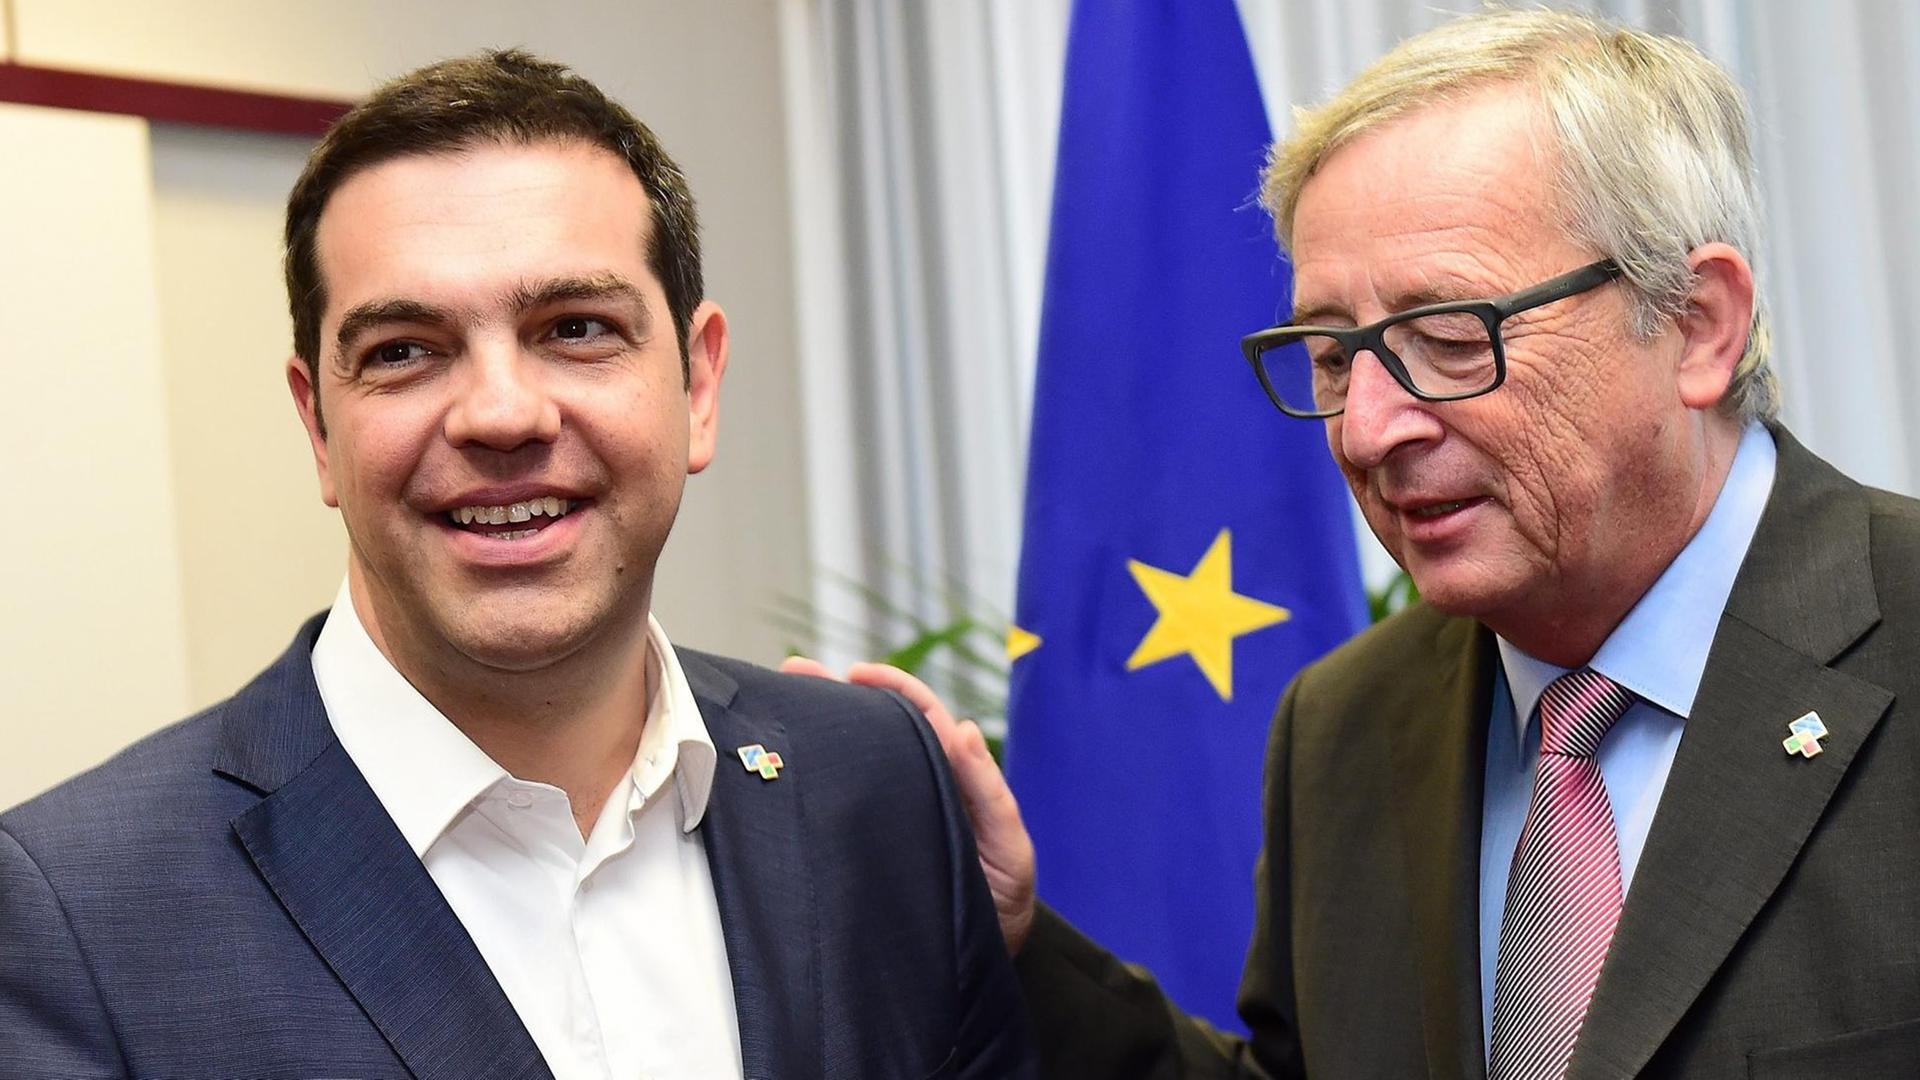 Tsipras und Juncker stehen in einem Raum vor einer EU-Flagge. Tsipras lacht. Juncker hat seine Hand auf Tsipras' Schulter und redet auf ihn ein.